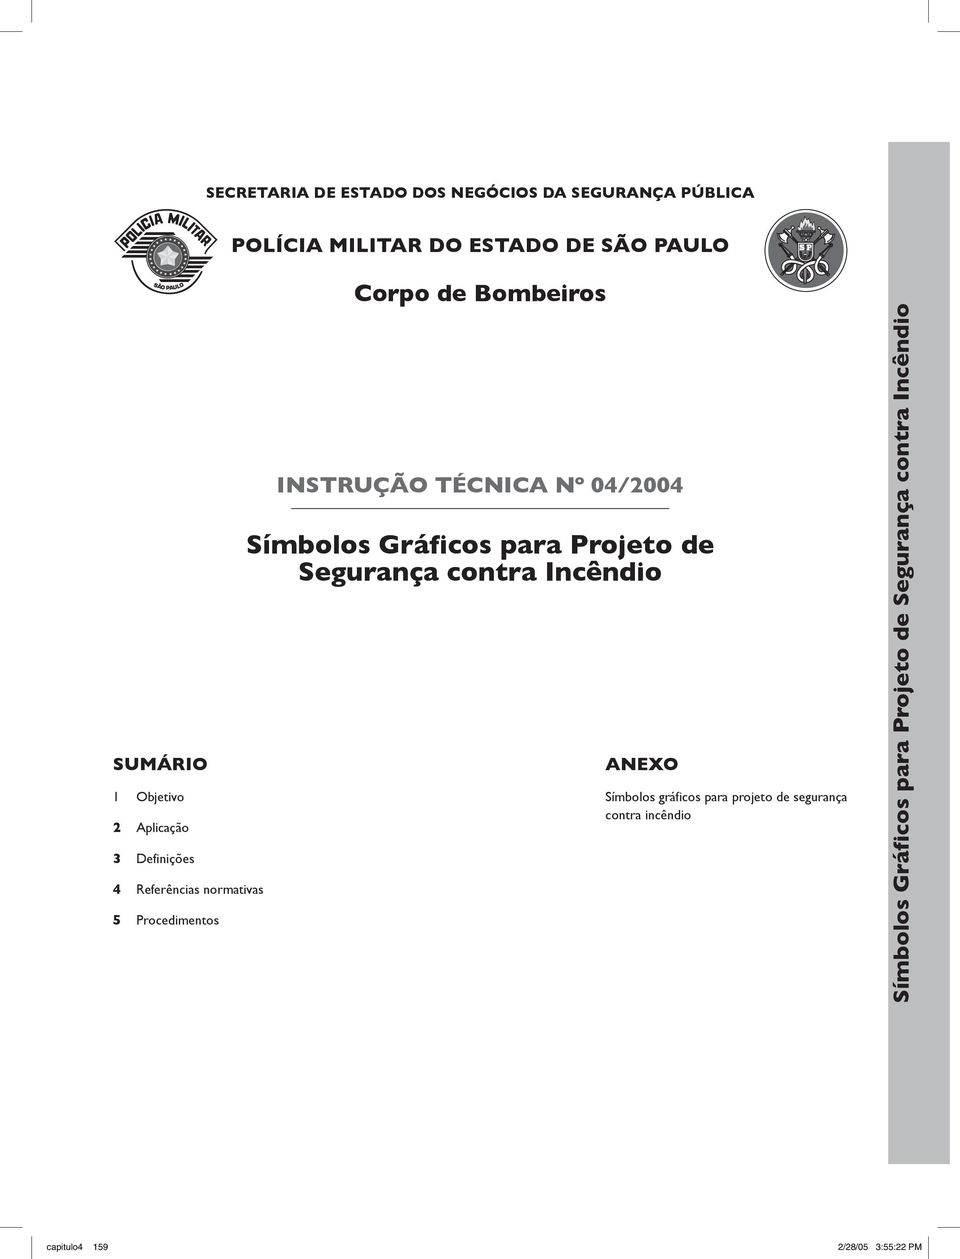 Nº 04/2004 Símbolos Gráficos para Projeto de Segurança contra Incêndio ANEXO Símbolos gráficos para projeto de